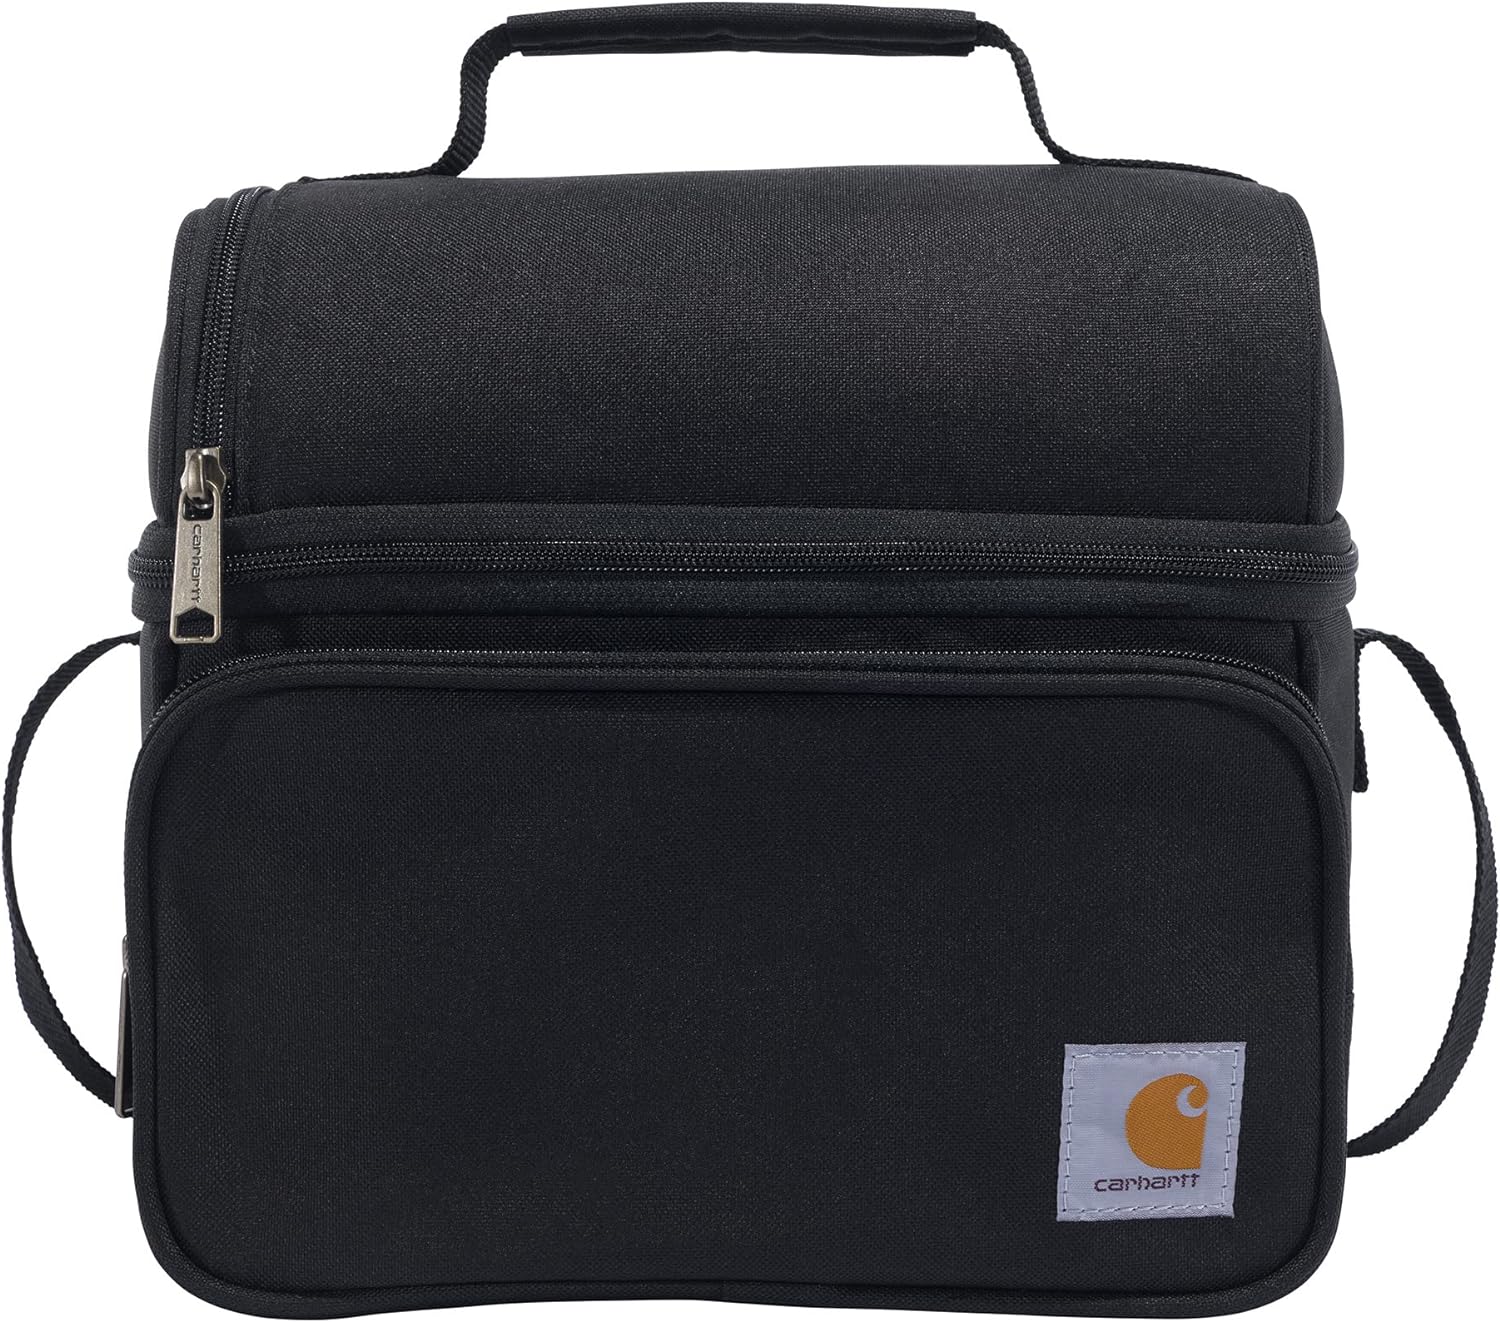 Carhartt-Deluxe-Lunch-Cooler-Bag